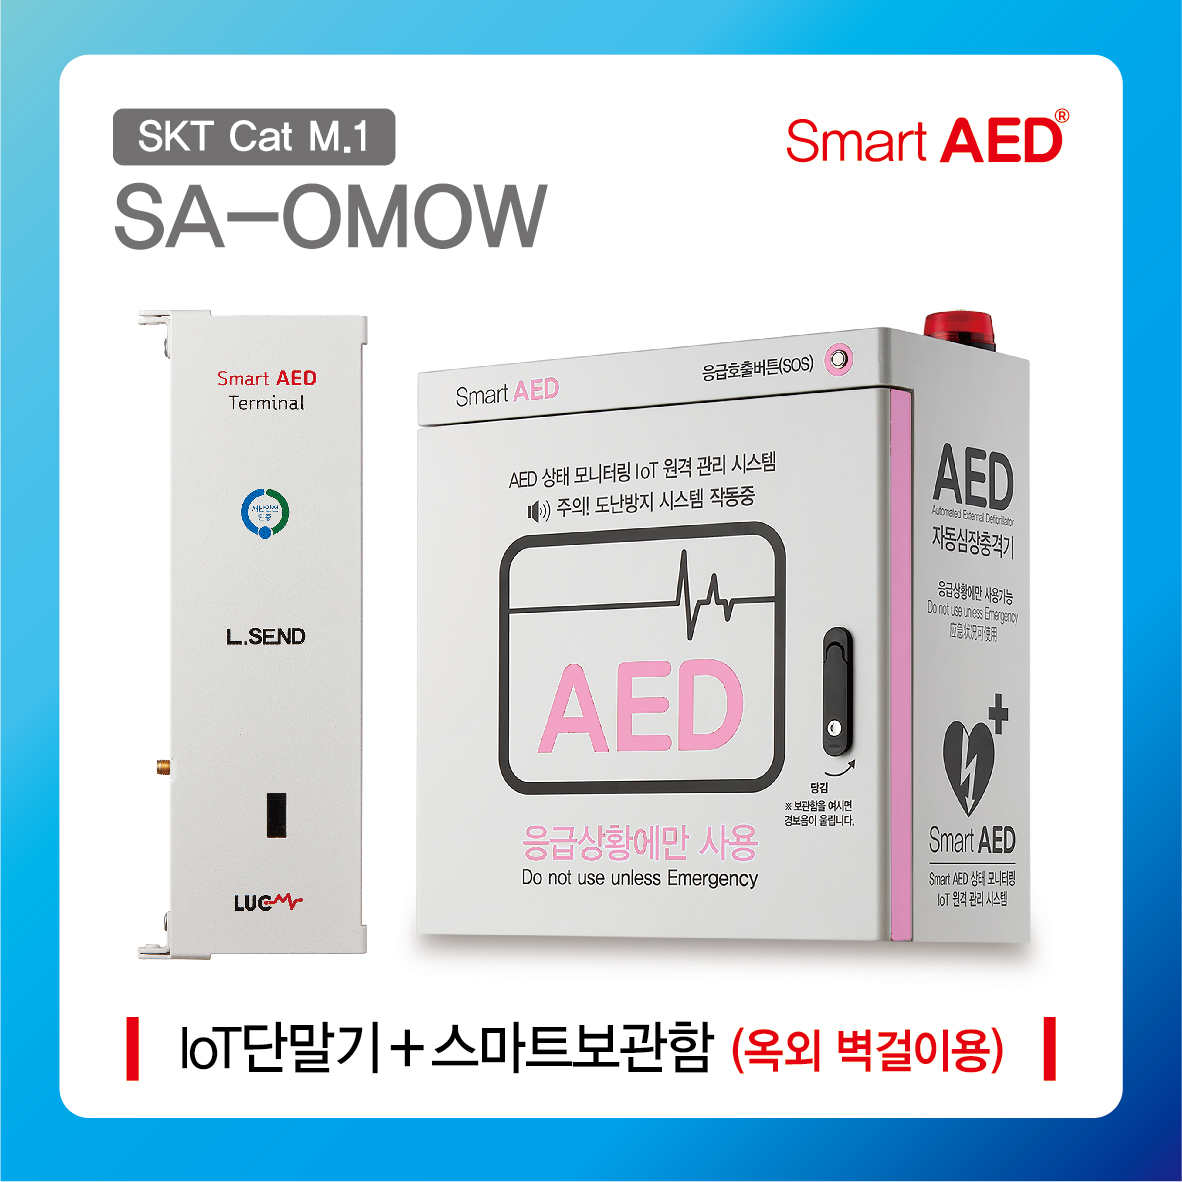 [ SA-OMOW ] 스마트 AED 통합모니터링 장치 및 보관함 (옥외 벽걸이형)